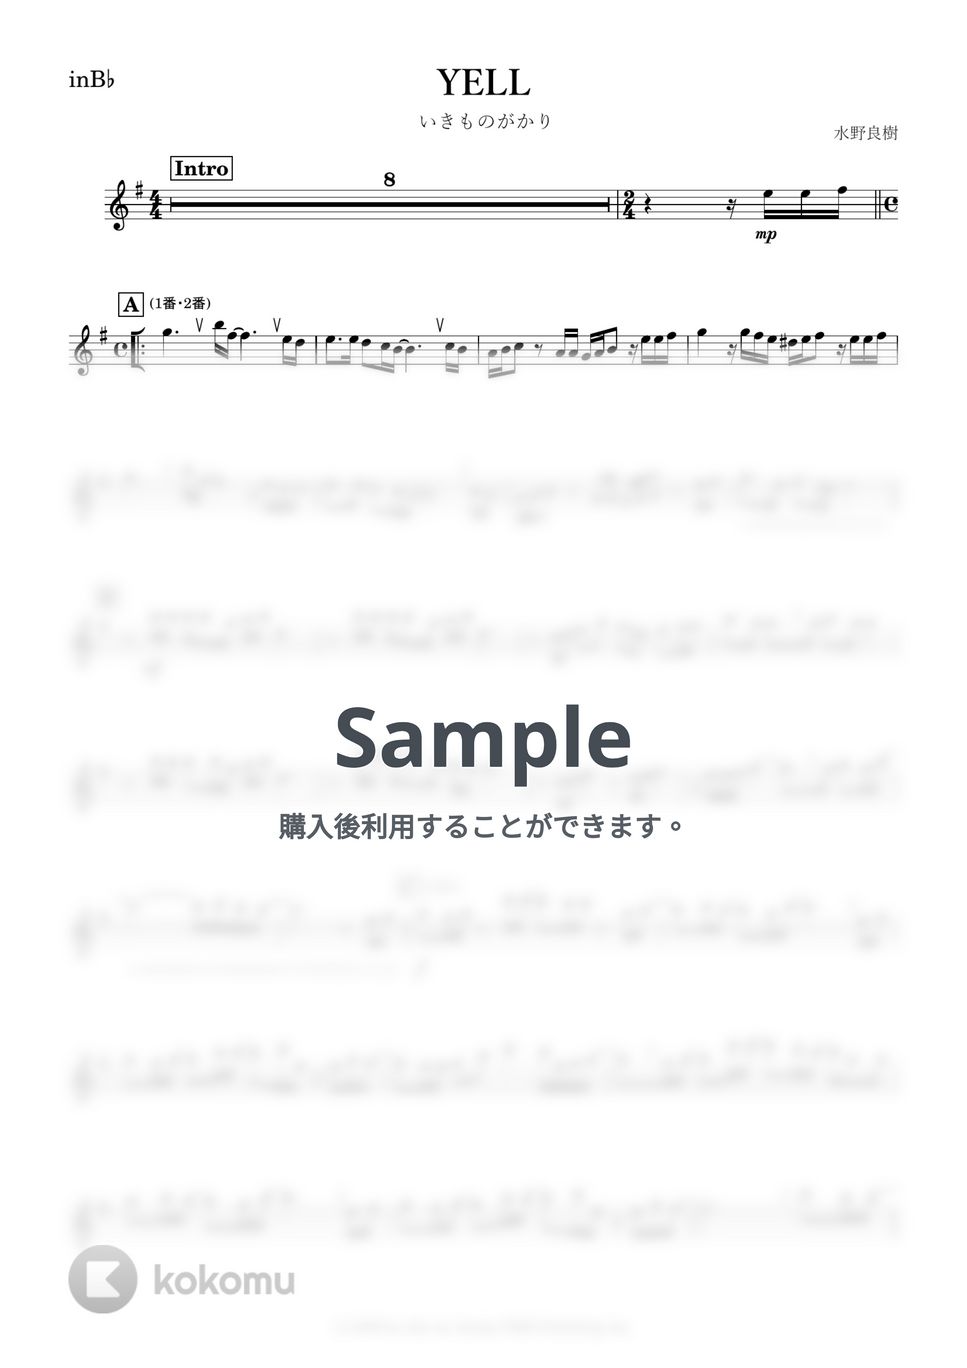 いきものがかり - YELL (B♭) by kanamusic